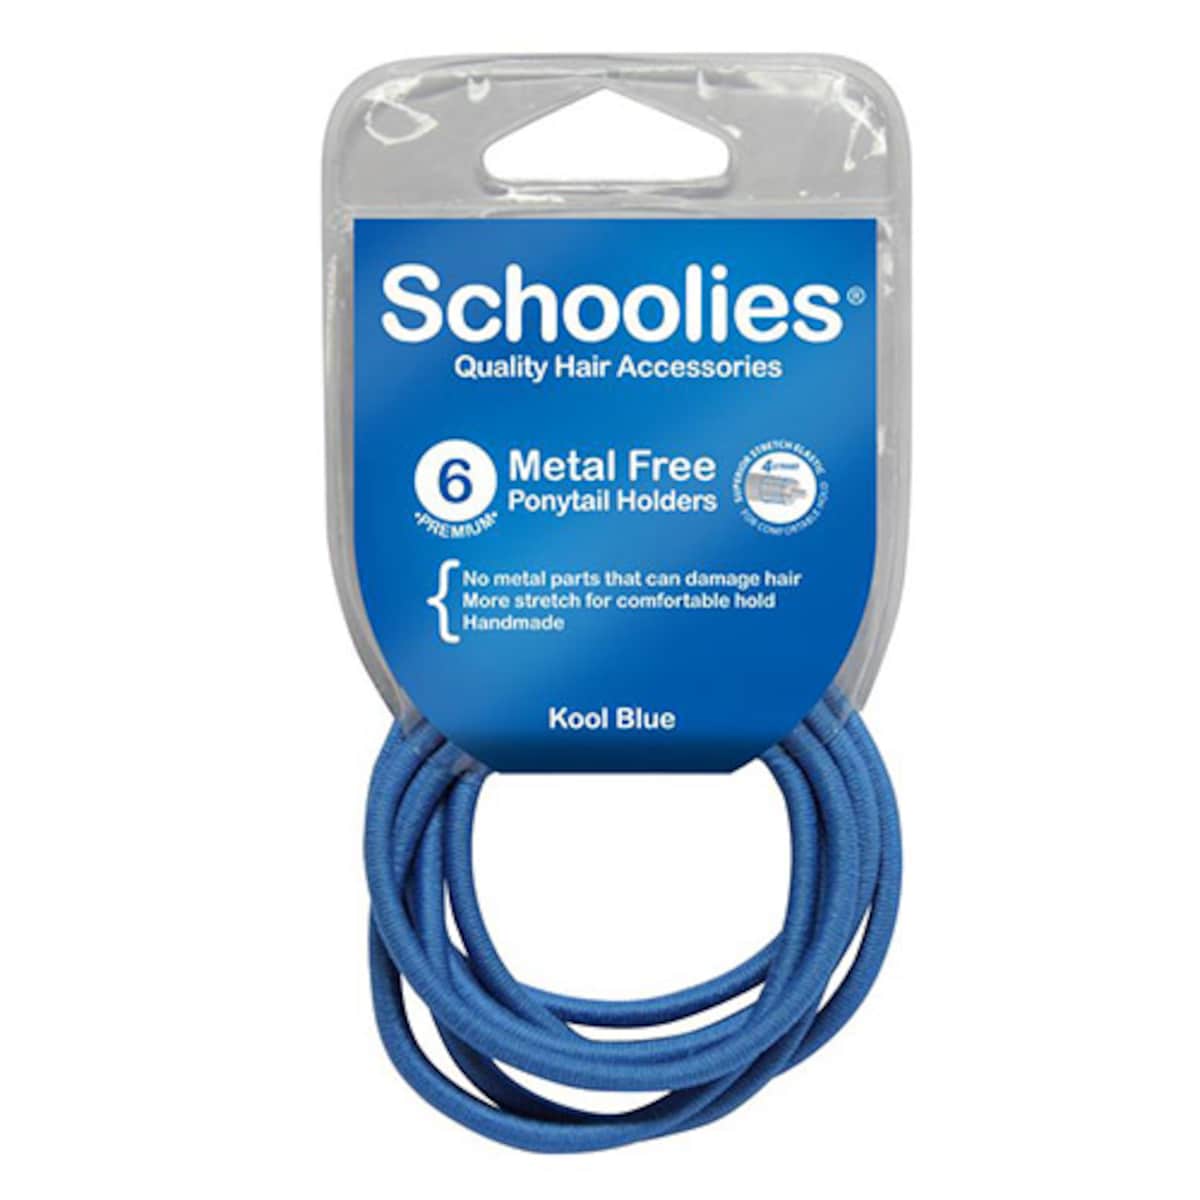 Schoolies #SC462 Metal Free Ponytail Holders Kool Blue 6 Pack